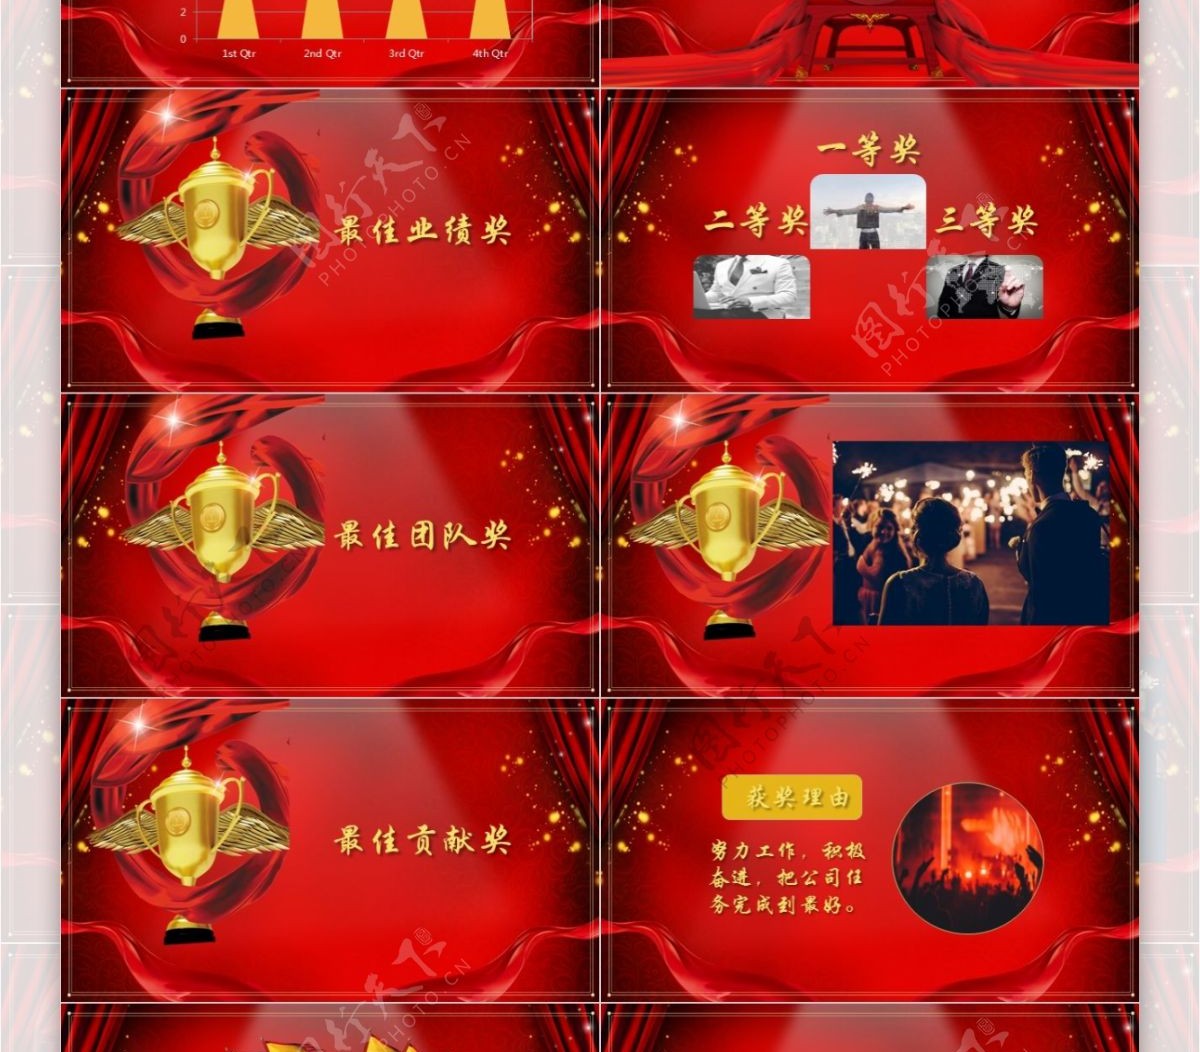 中国风年会节目单报幕背景庆典PPT模板年会背景